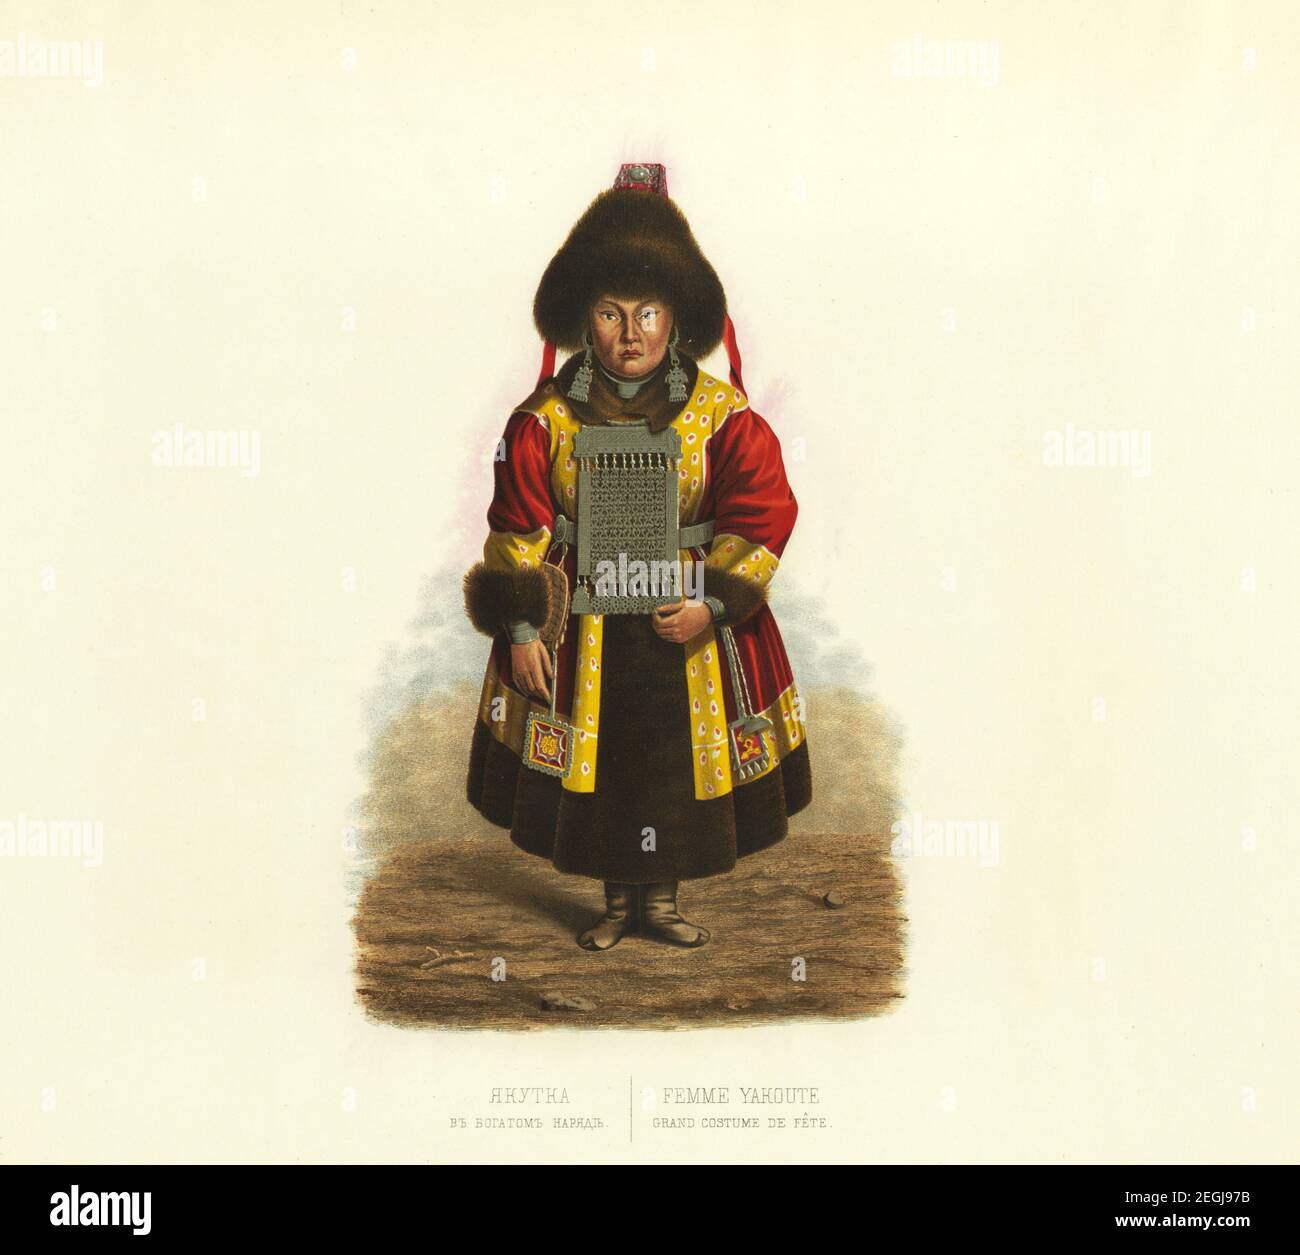 Iakutka, costume traditionnel sibérien, robe folklorique, ancienne illustration rétro dessinée sur papier, libre de droits d'auteur Banque D'Images